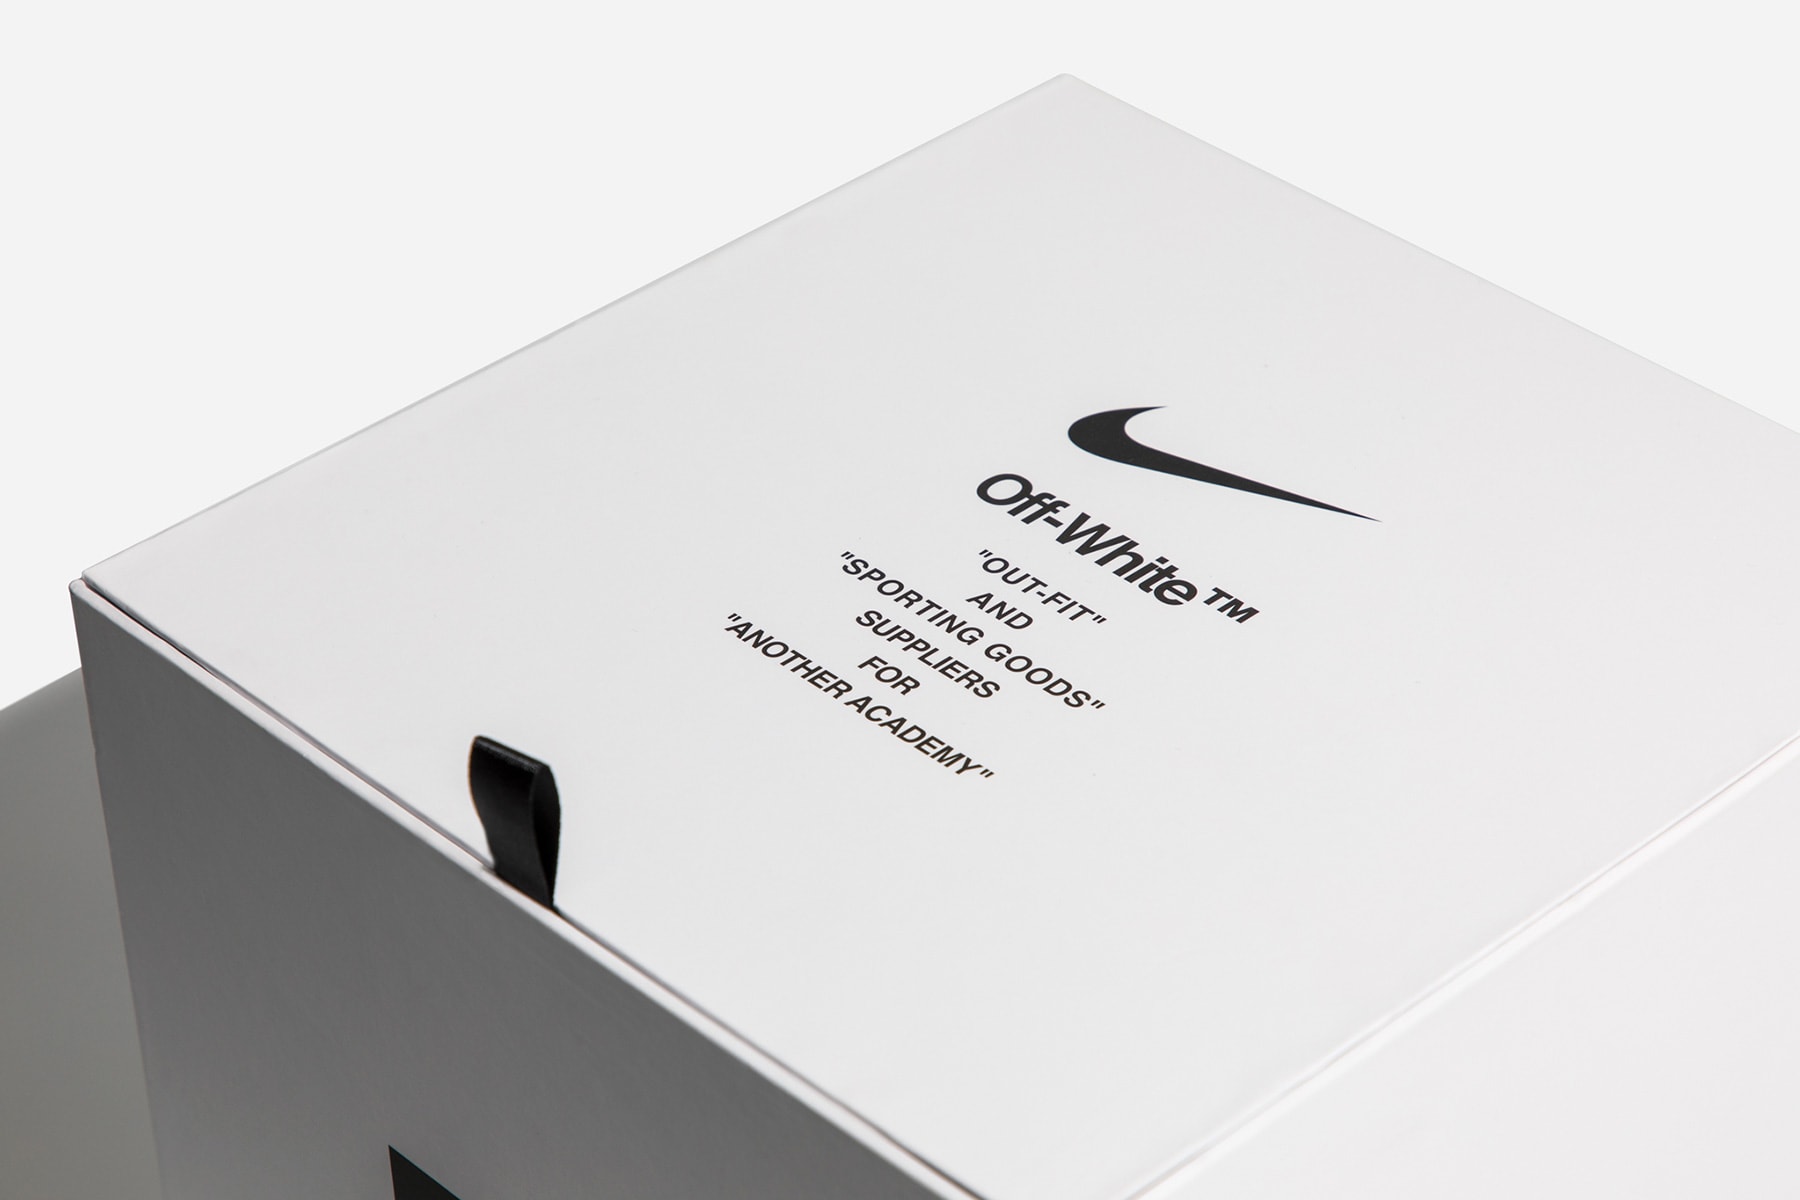 Off-White™ x Nike によるコラボサッカーボール “Magia” にクローズアップ オフホワイト ナイキ HYPEBEAST ハイプビースト